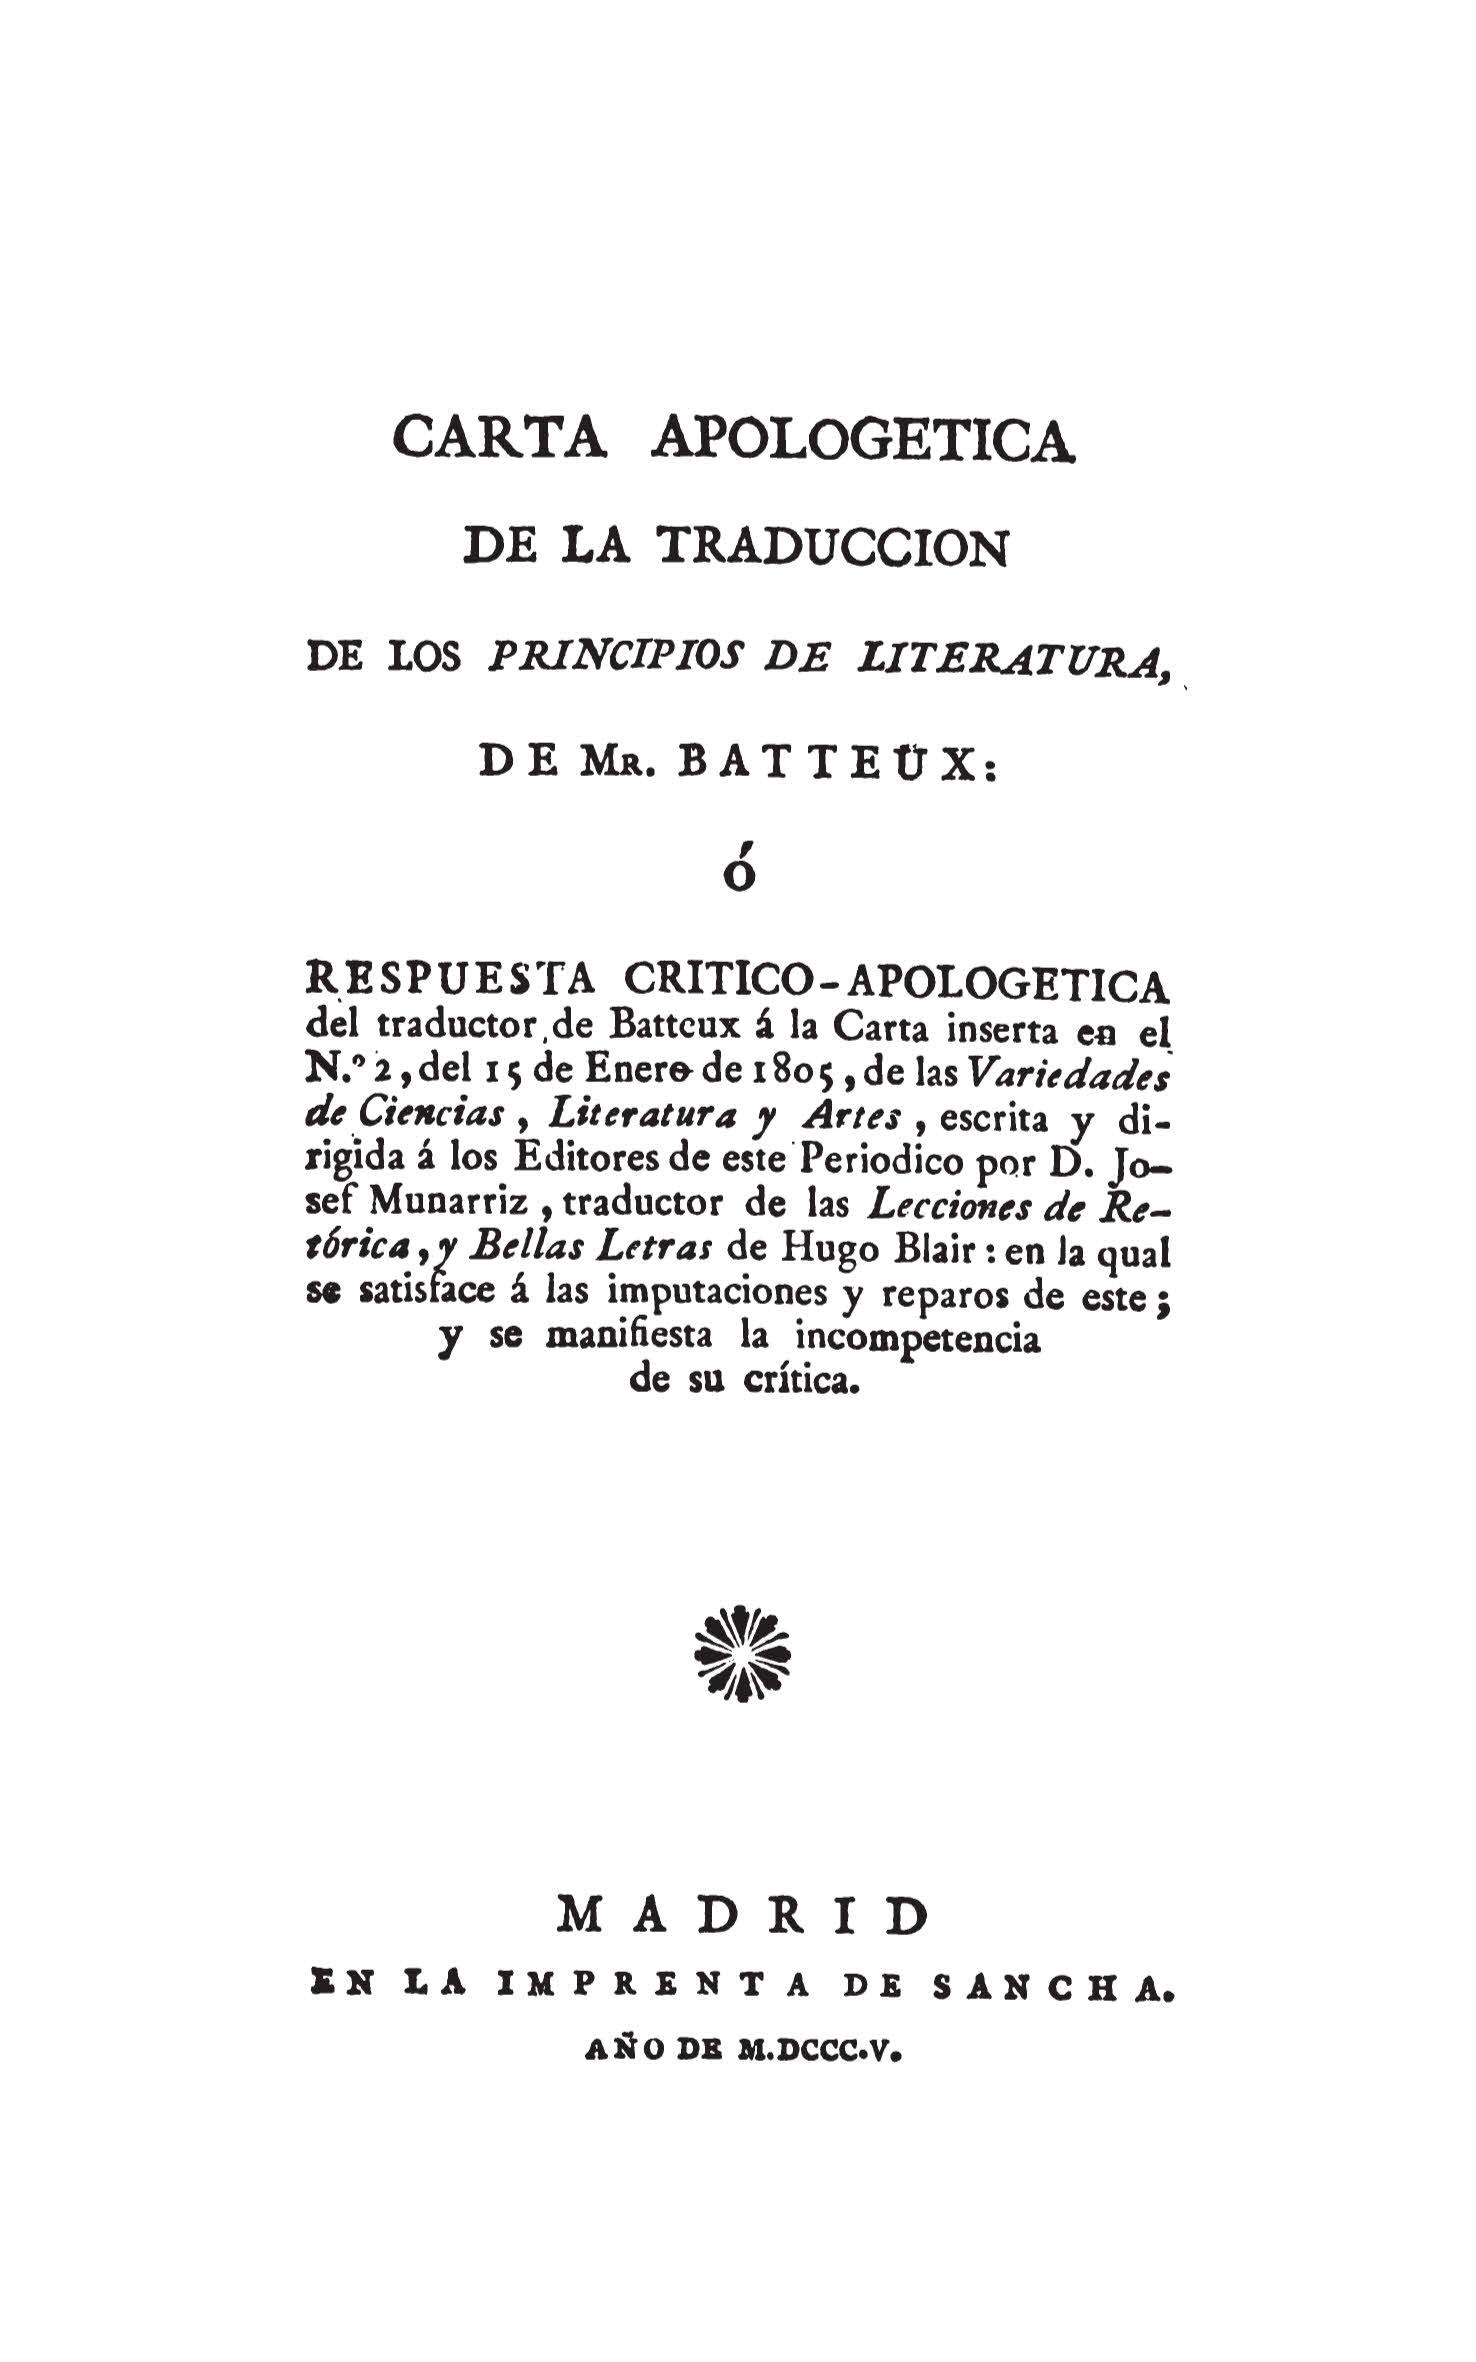 Carta apologética de la traducción de los Principios de literatura de Mr. Batteux